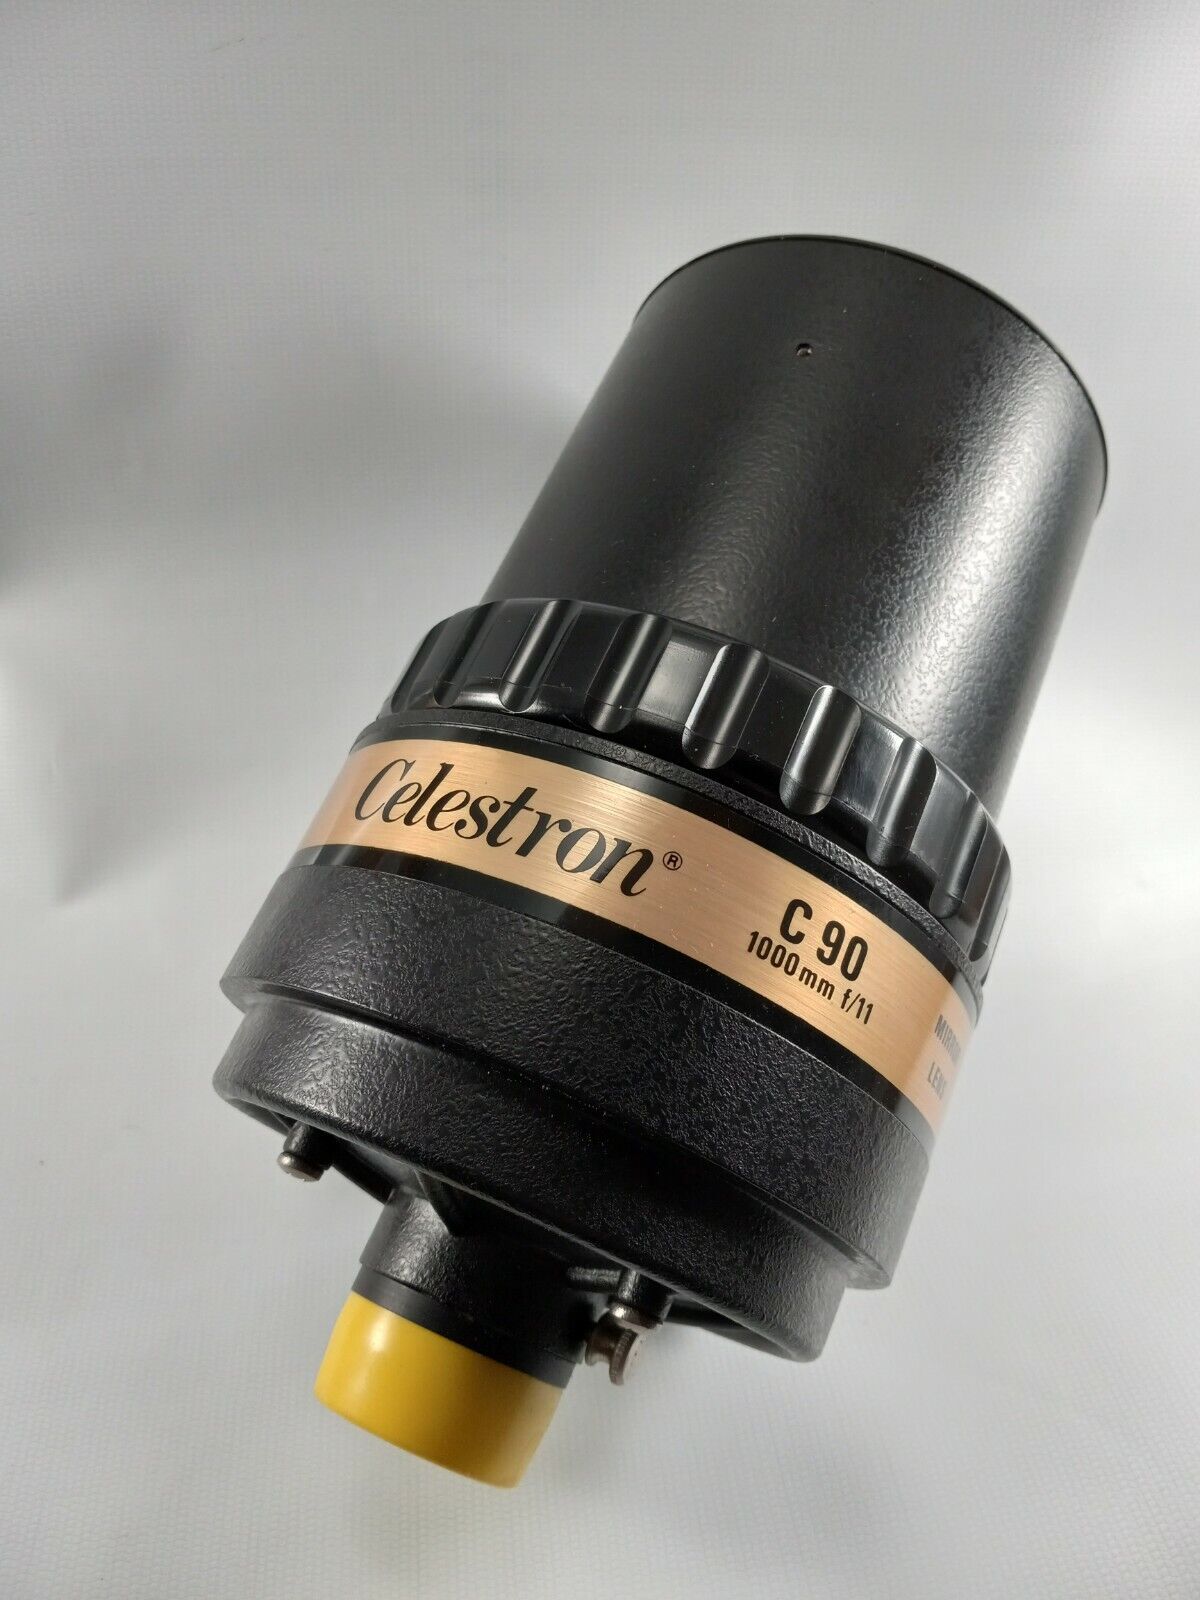 Celestron C90 1000mm with Lenses & Case